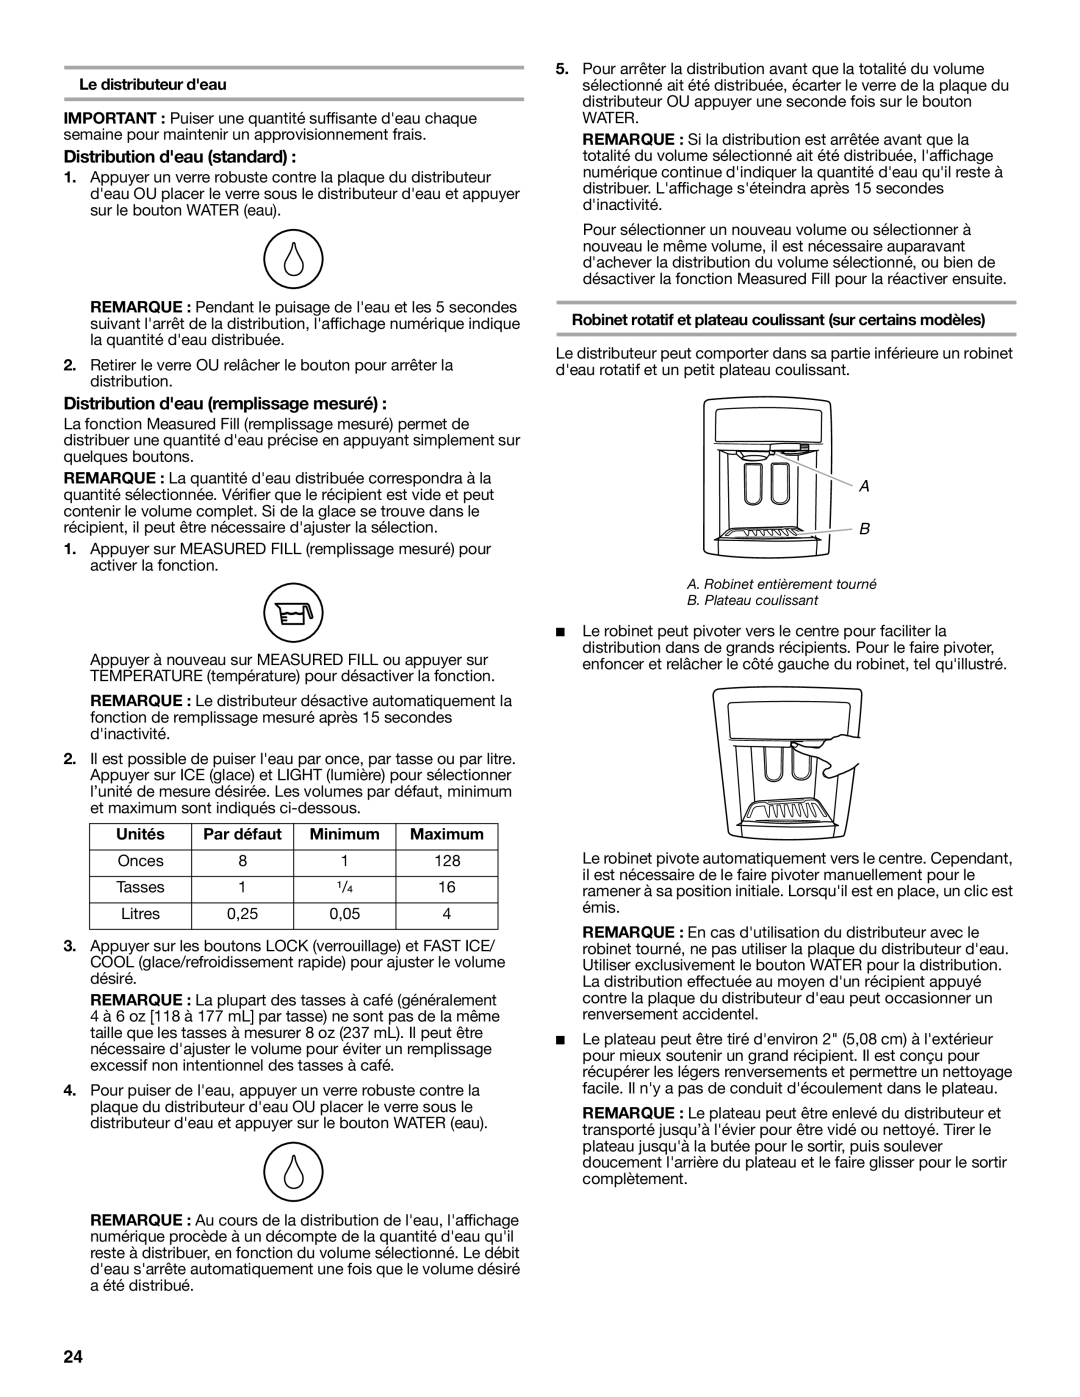 Whirlpool W10162459A, W10162458A installation instructions Le distributeur deau, Unités, Par défaut, Minimum, Maximum 